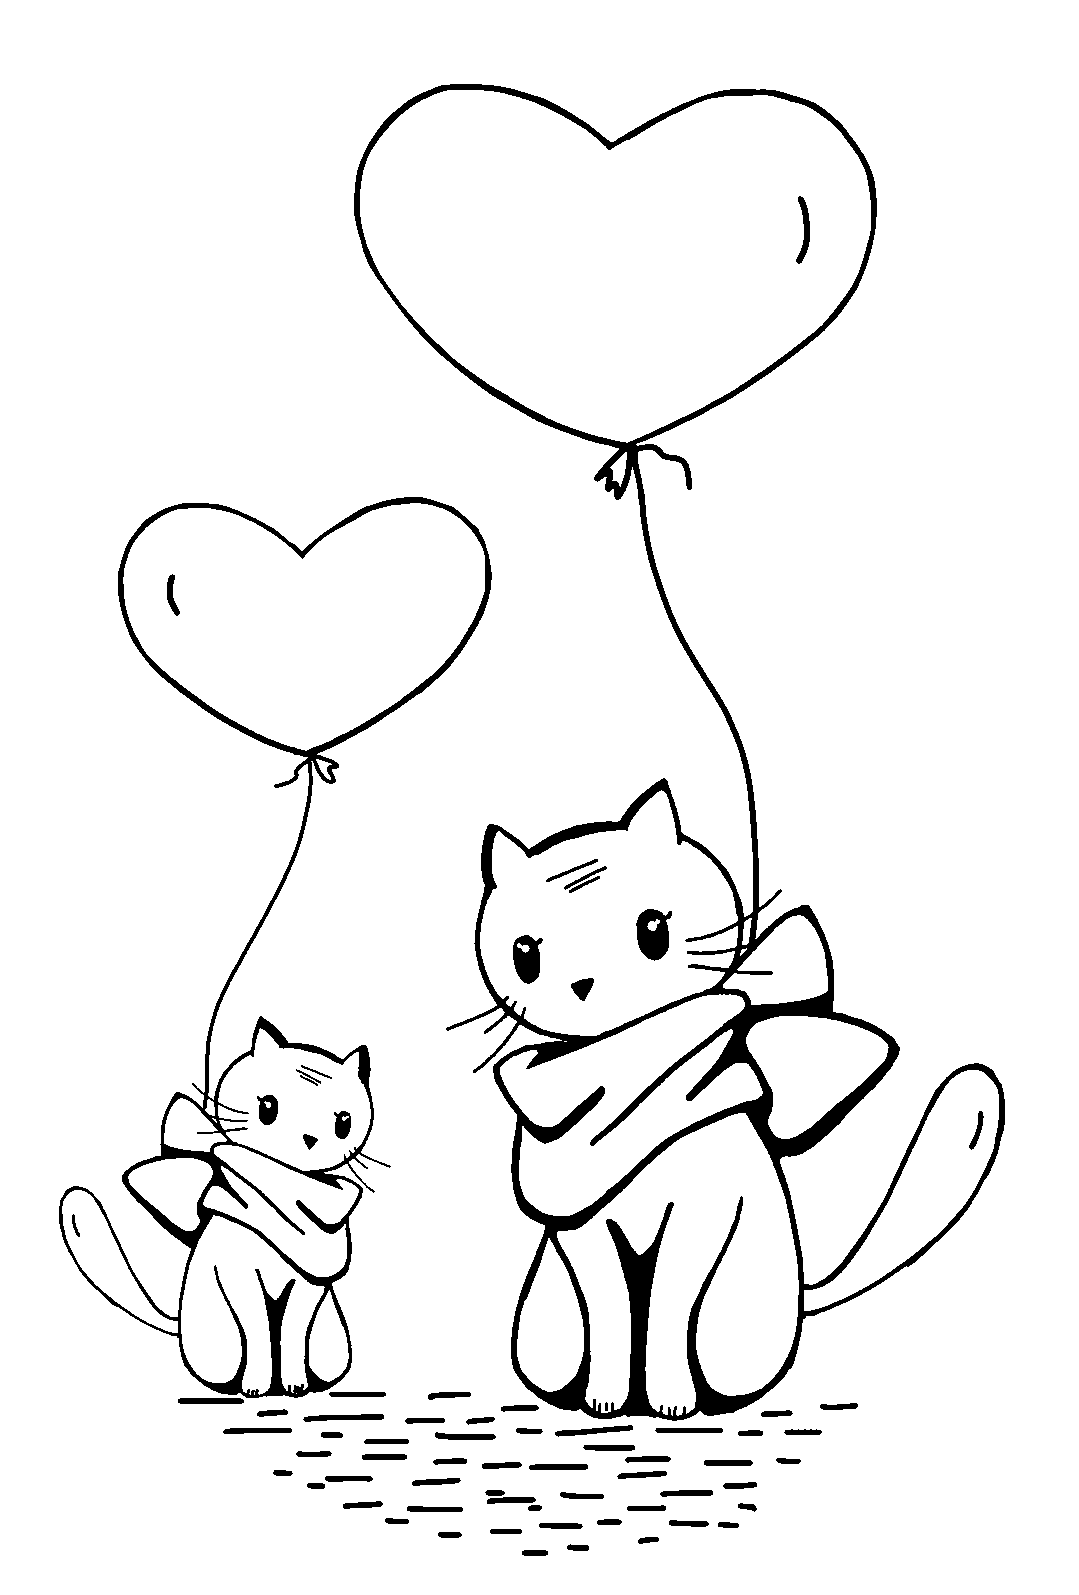 Disegno da colorare di gatti kawaii con palloncino a forma di cuore